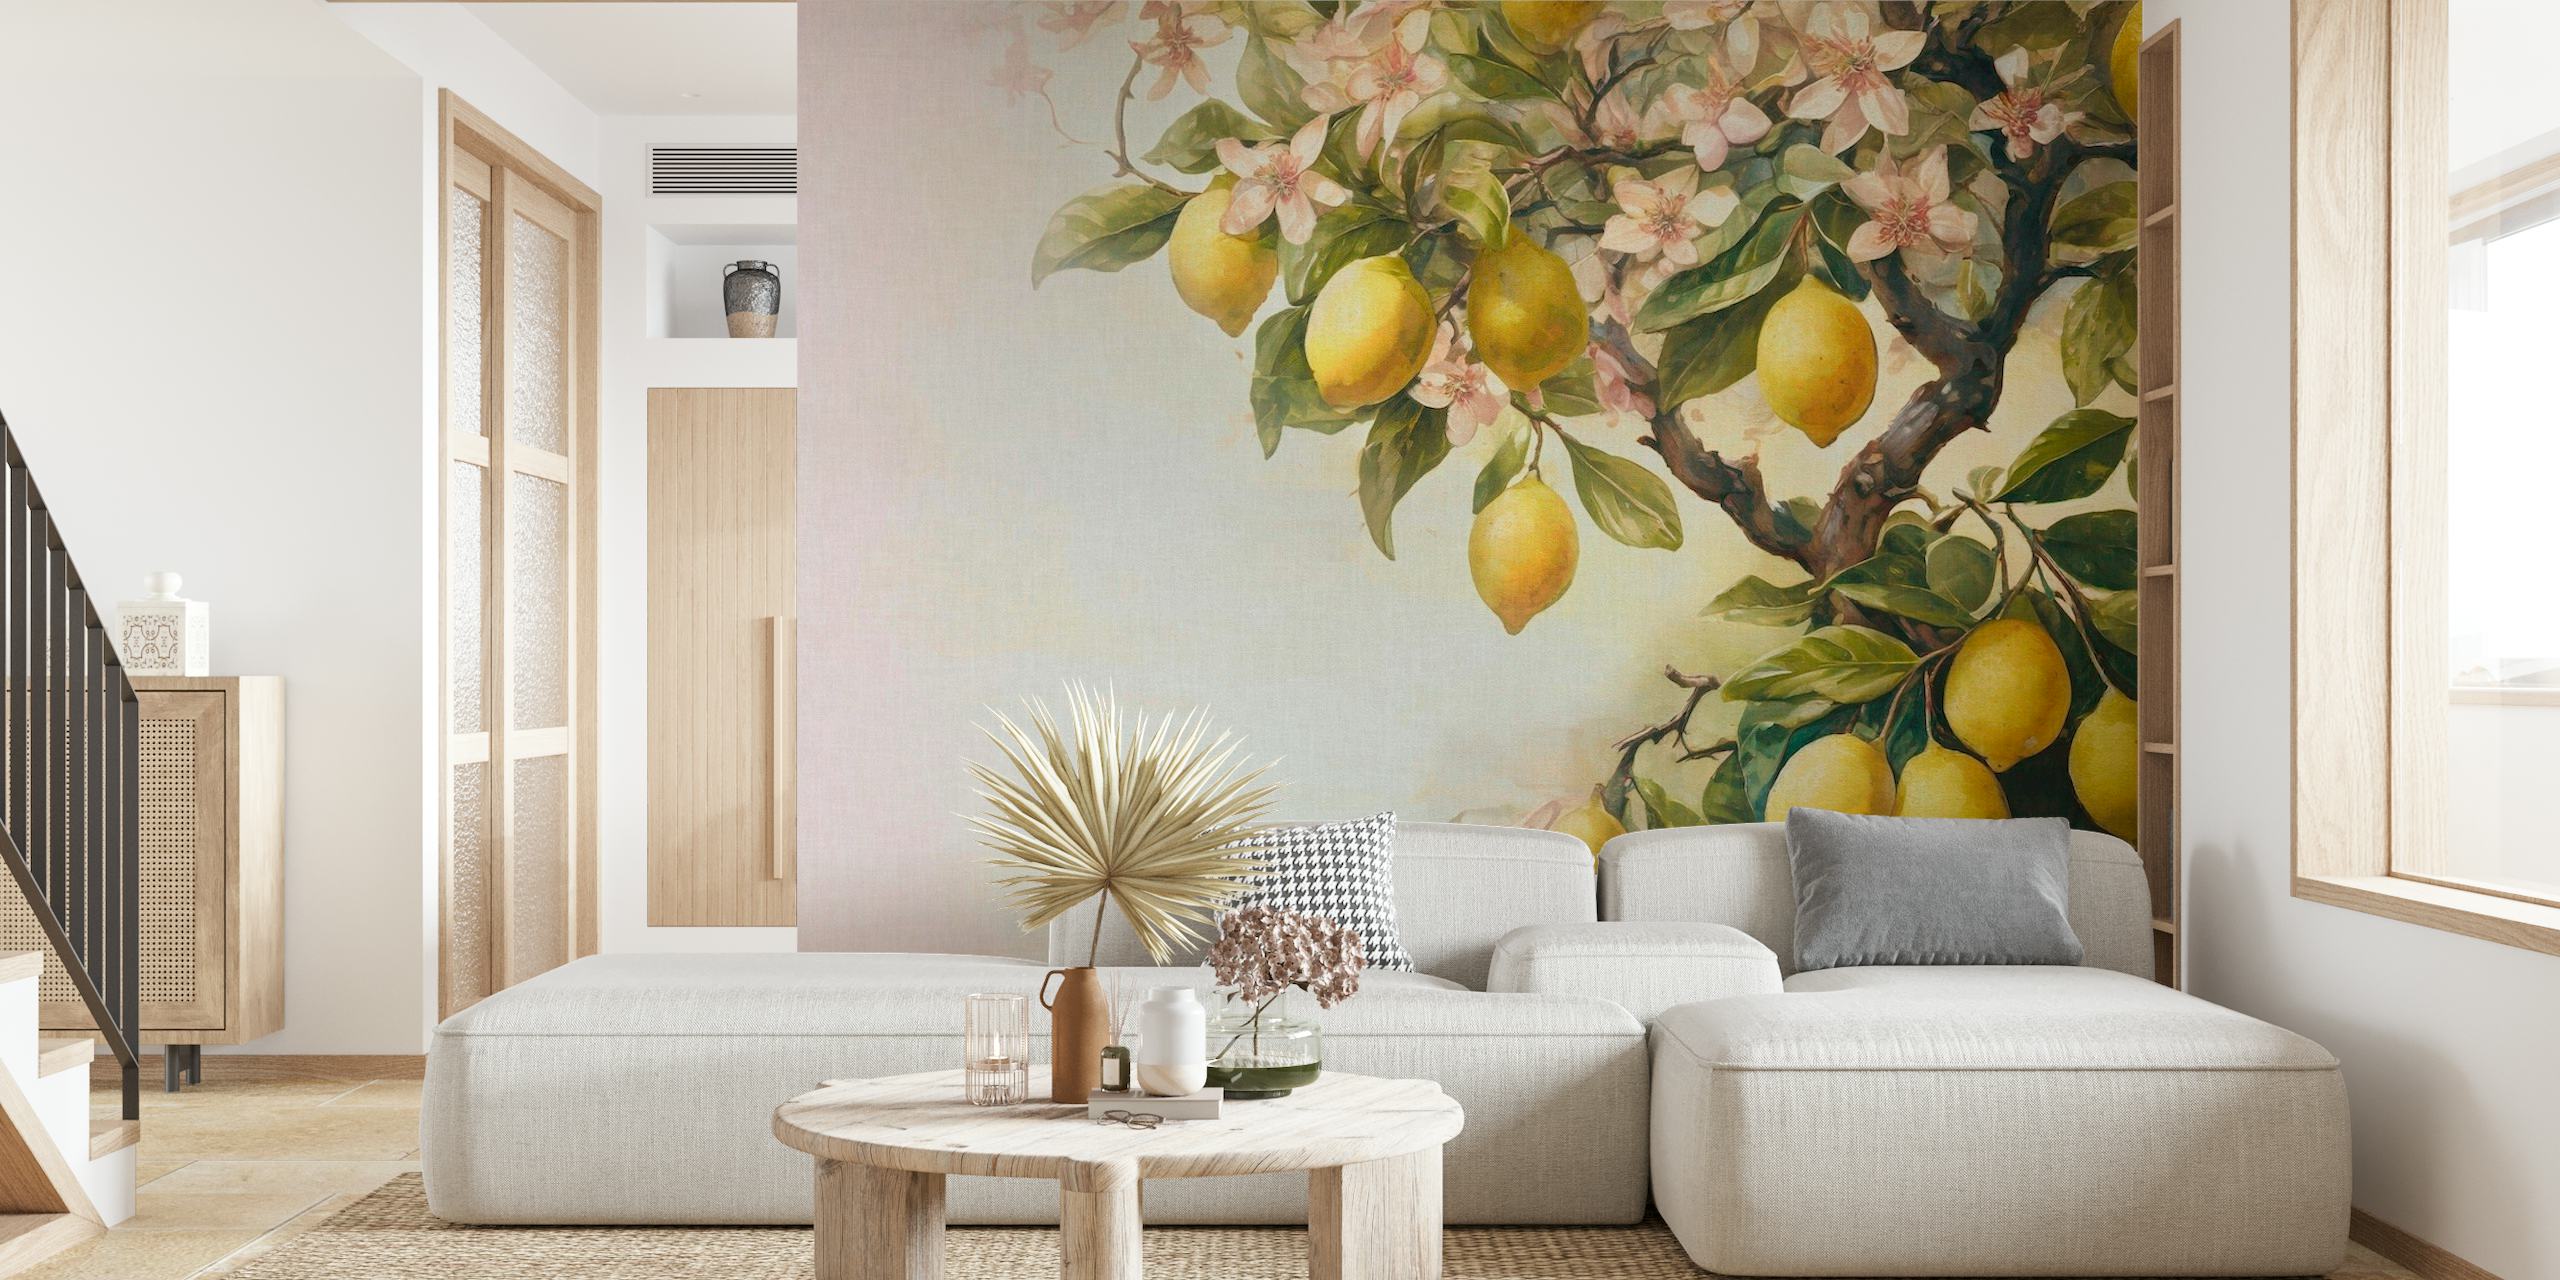 Mural de parede de um limoeiro com limões maduros e flores em tons suaves vintage